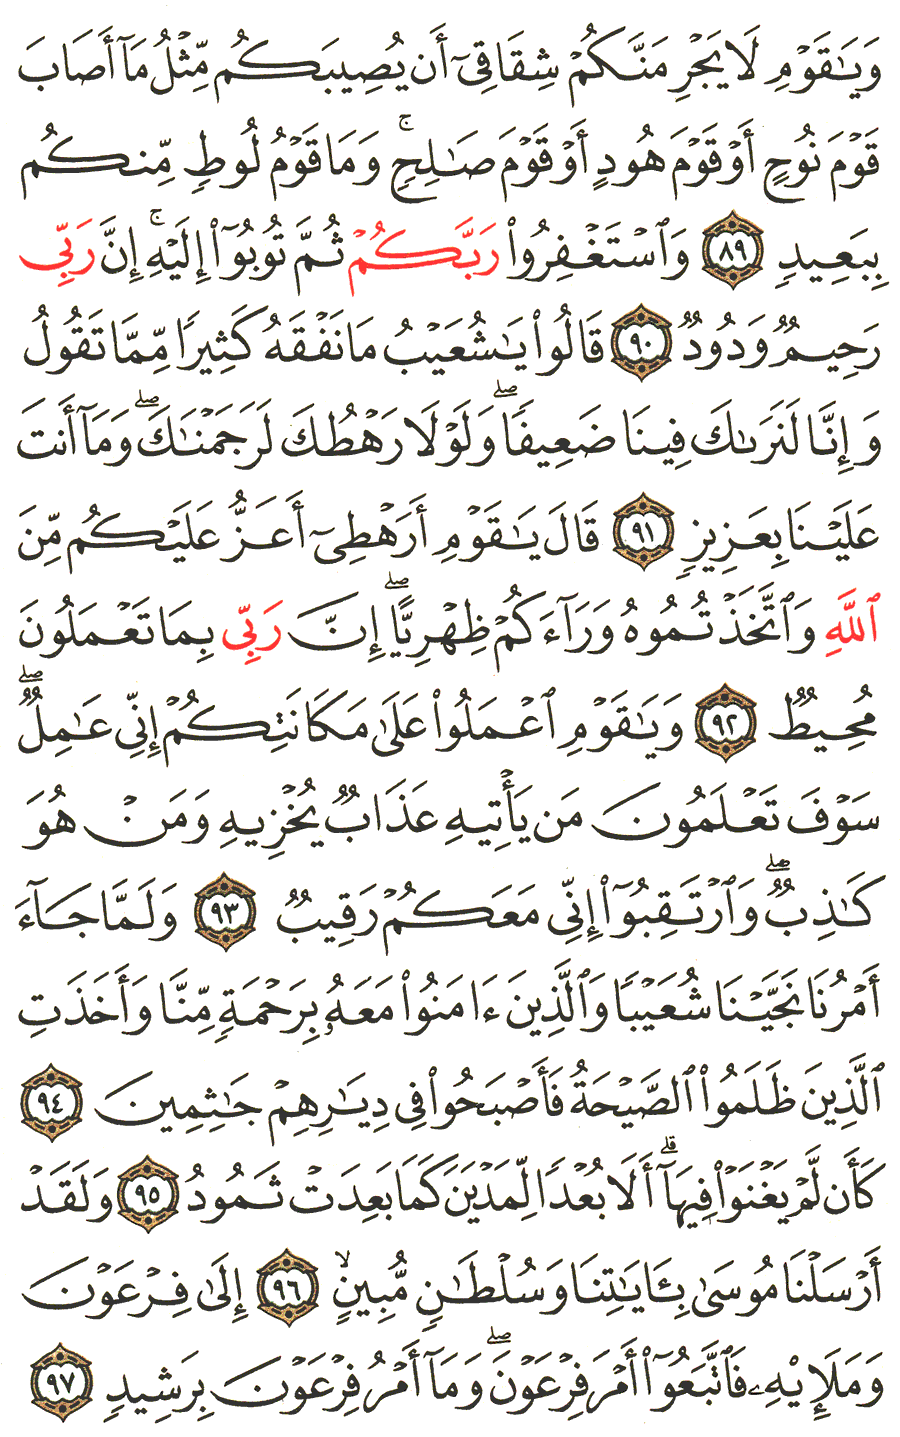 الصفحة رقم 232  من القرآن الكريم مكتوبة من المصحف